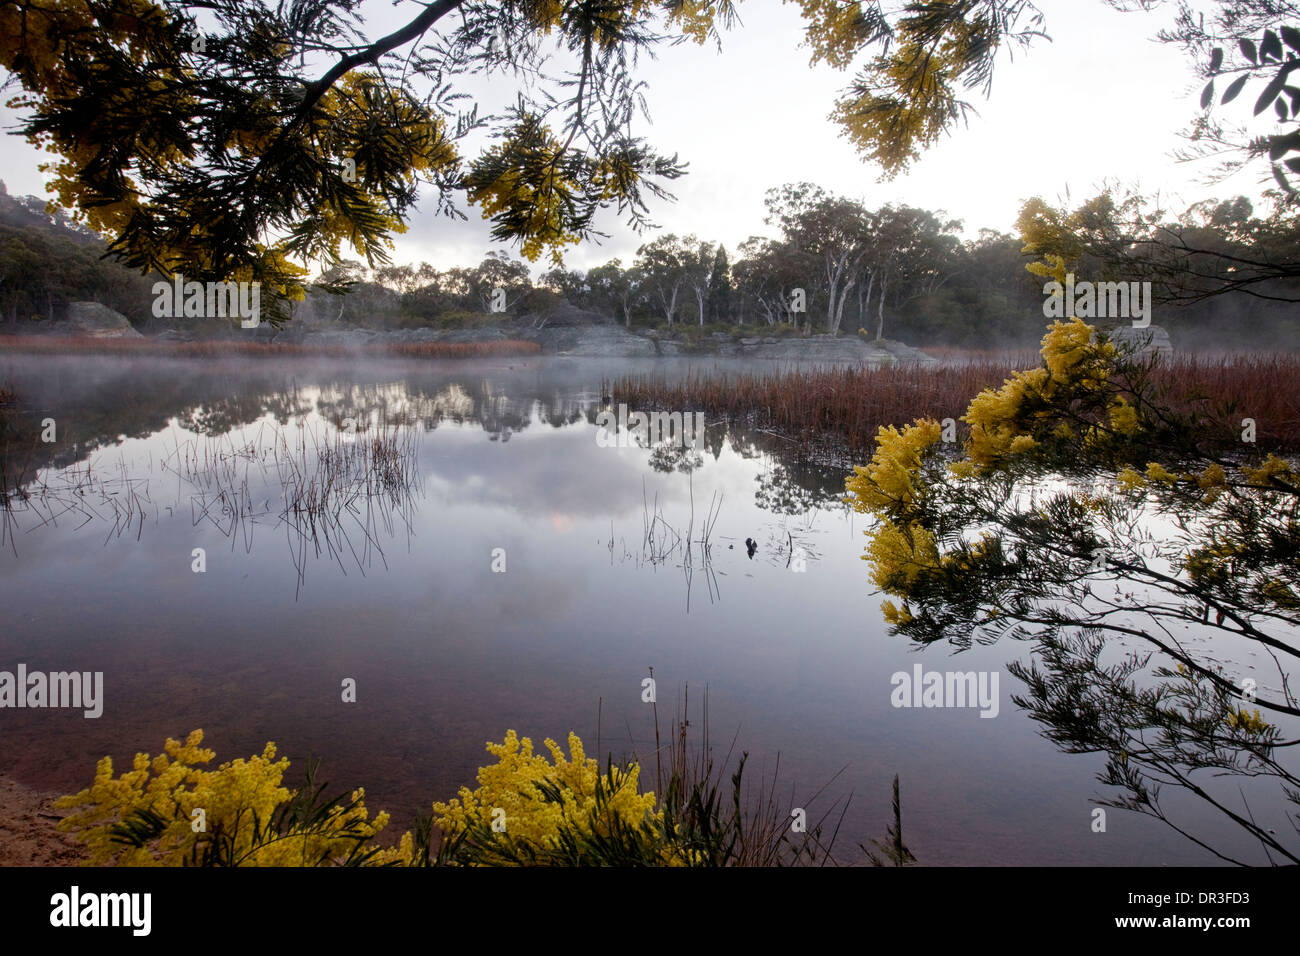 Paysage spectaculaire, la brume sur le lac, les terres humides bordés de fleurs sauvages à Dunn des marais du parc national Wollemi NSW Australie Banque D'Images